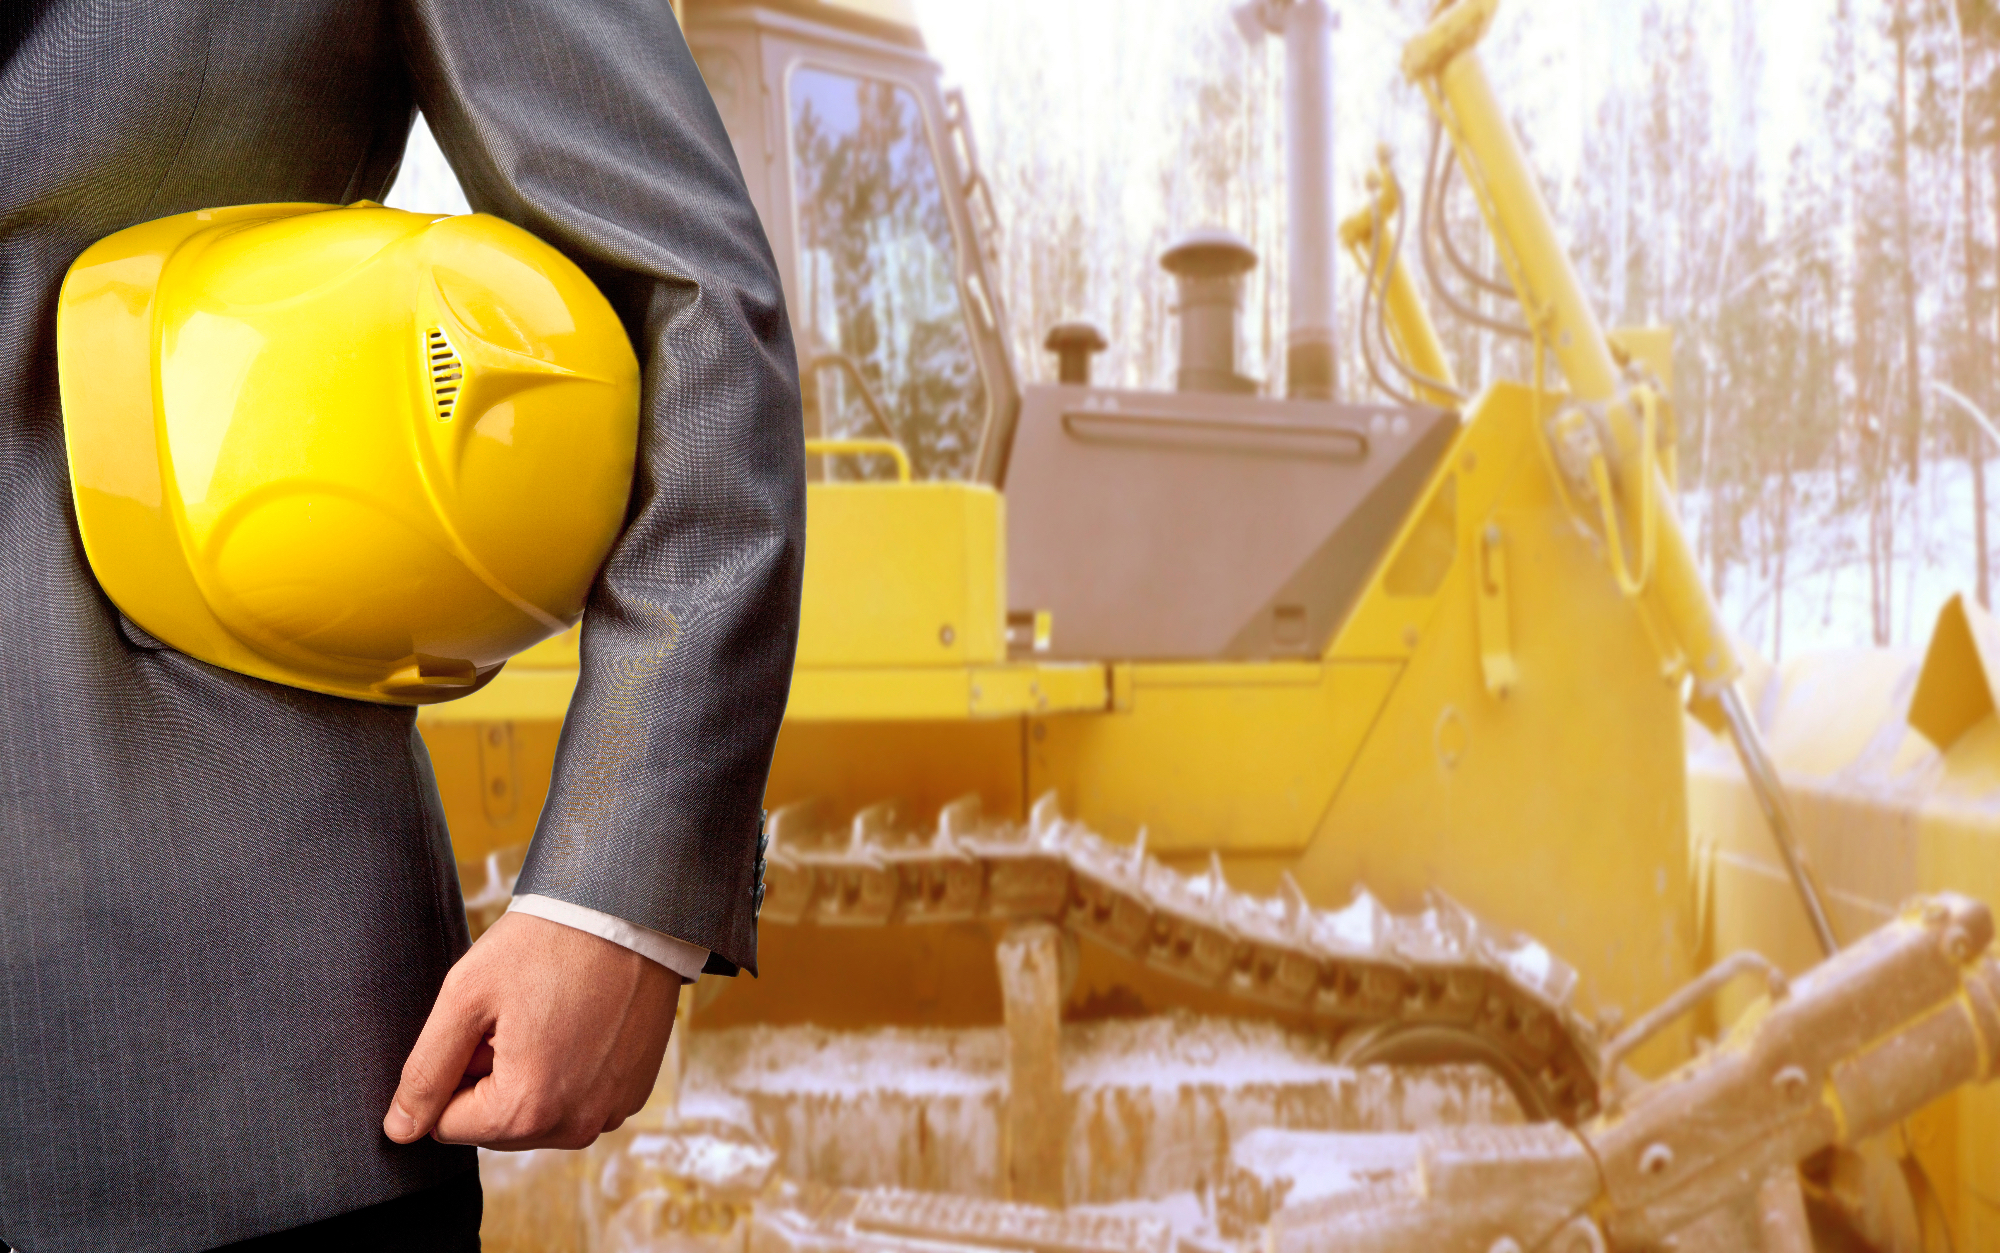 Pri delu je pomembna delovna zaščita za zaščito pred poškodbami